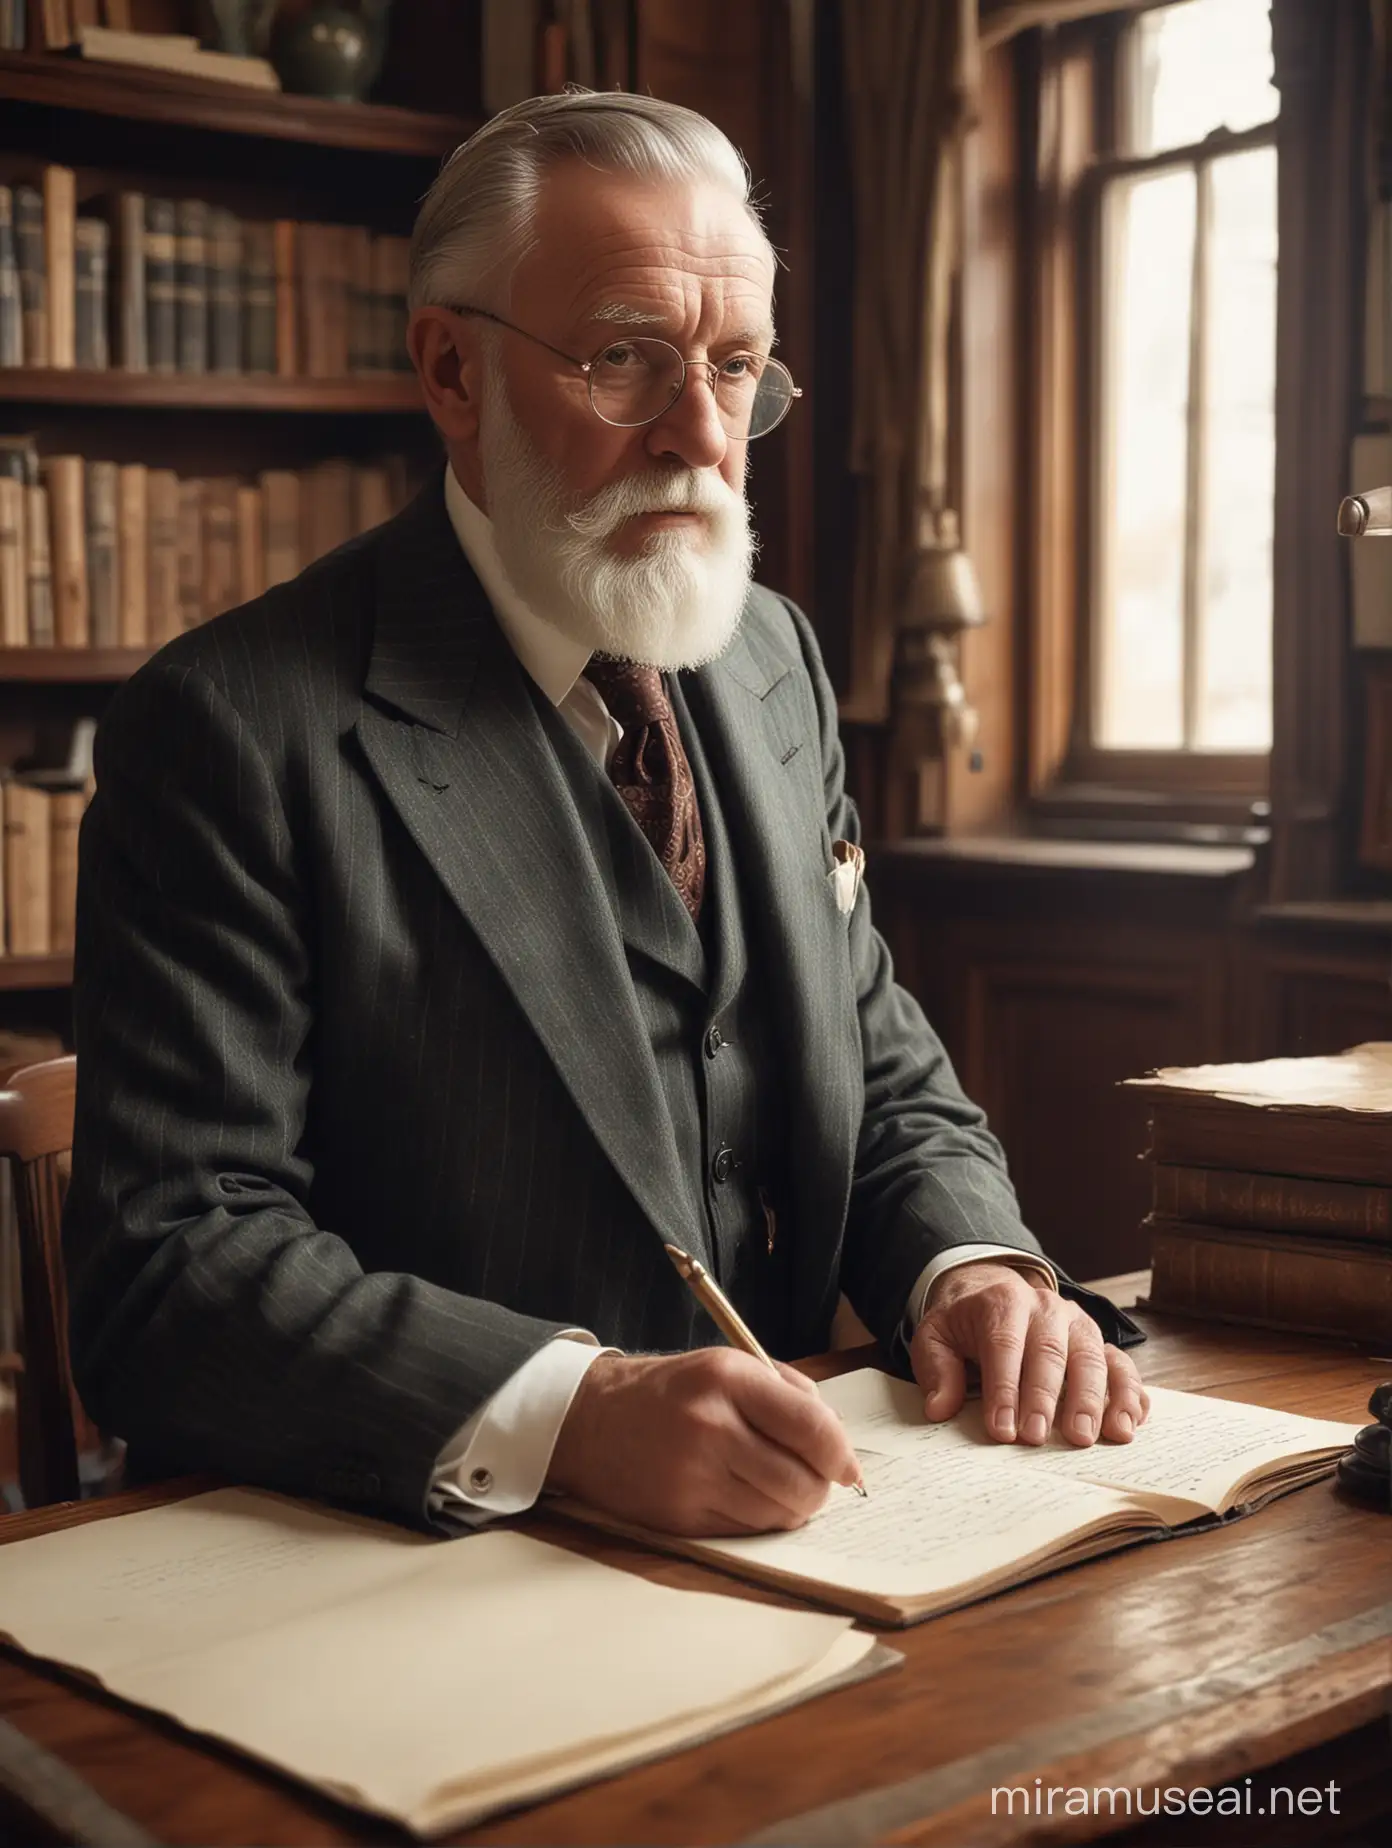 Anciano de barba prolija, vestido con traje a la moda de 1930, escribiendo detrás de un escritorio de madera, en una habitación con biblioteca, en una casona antigua.